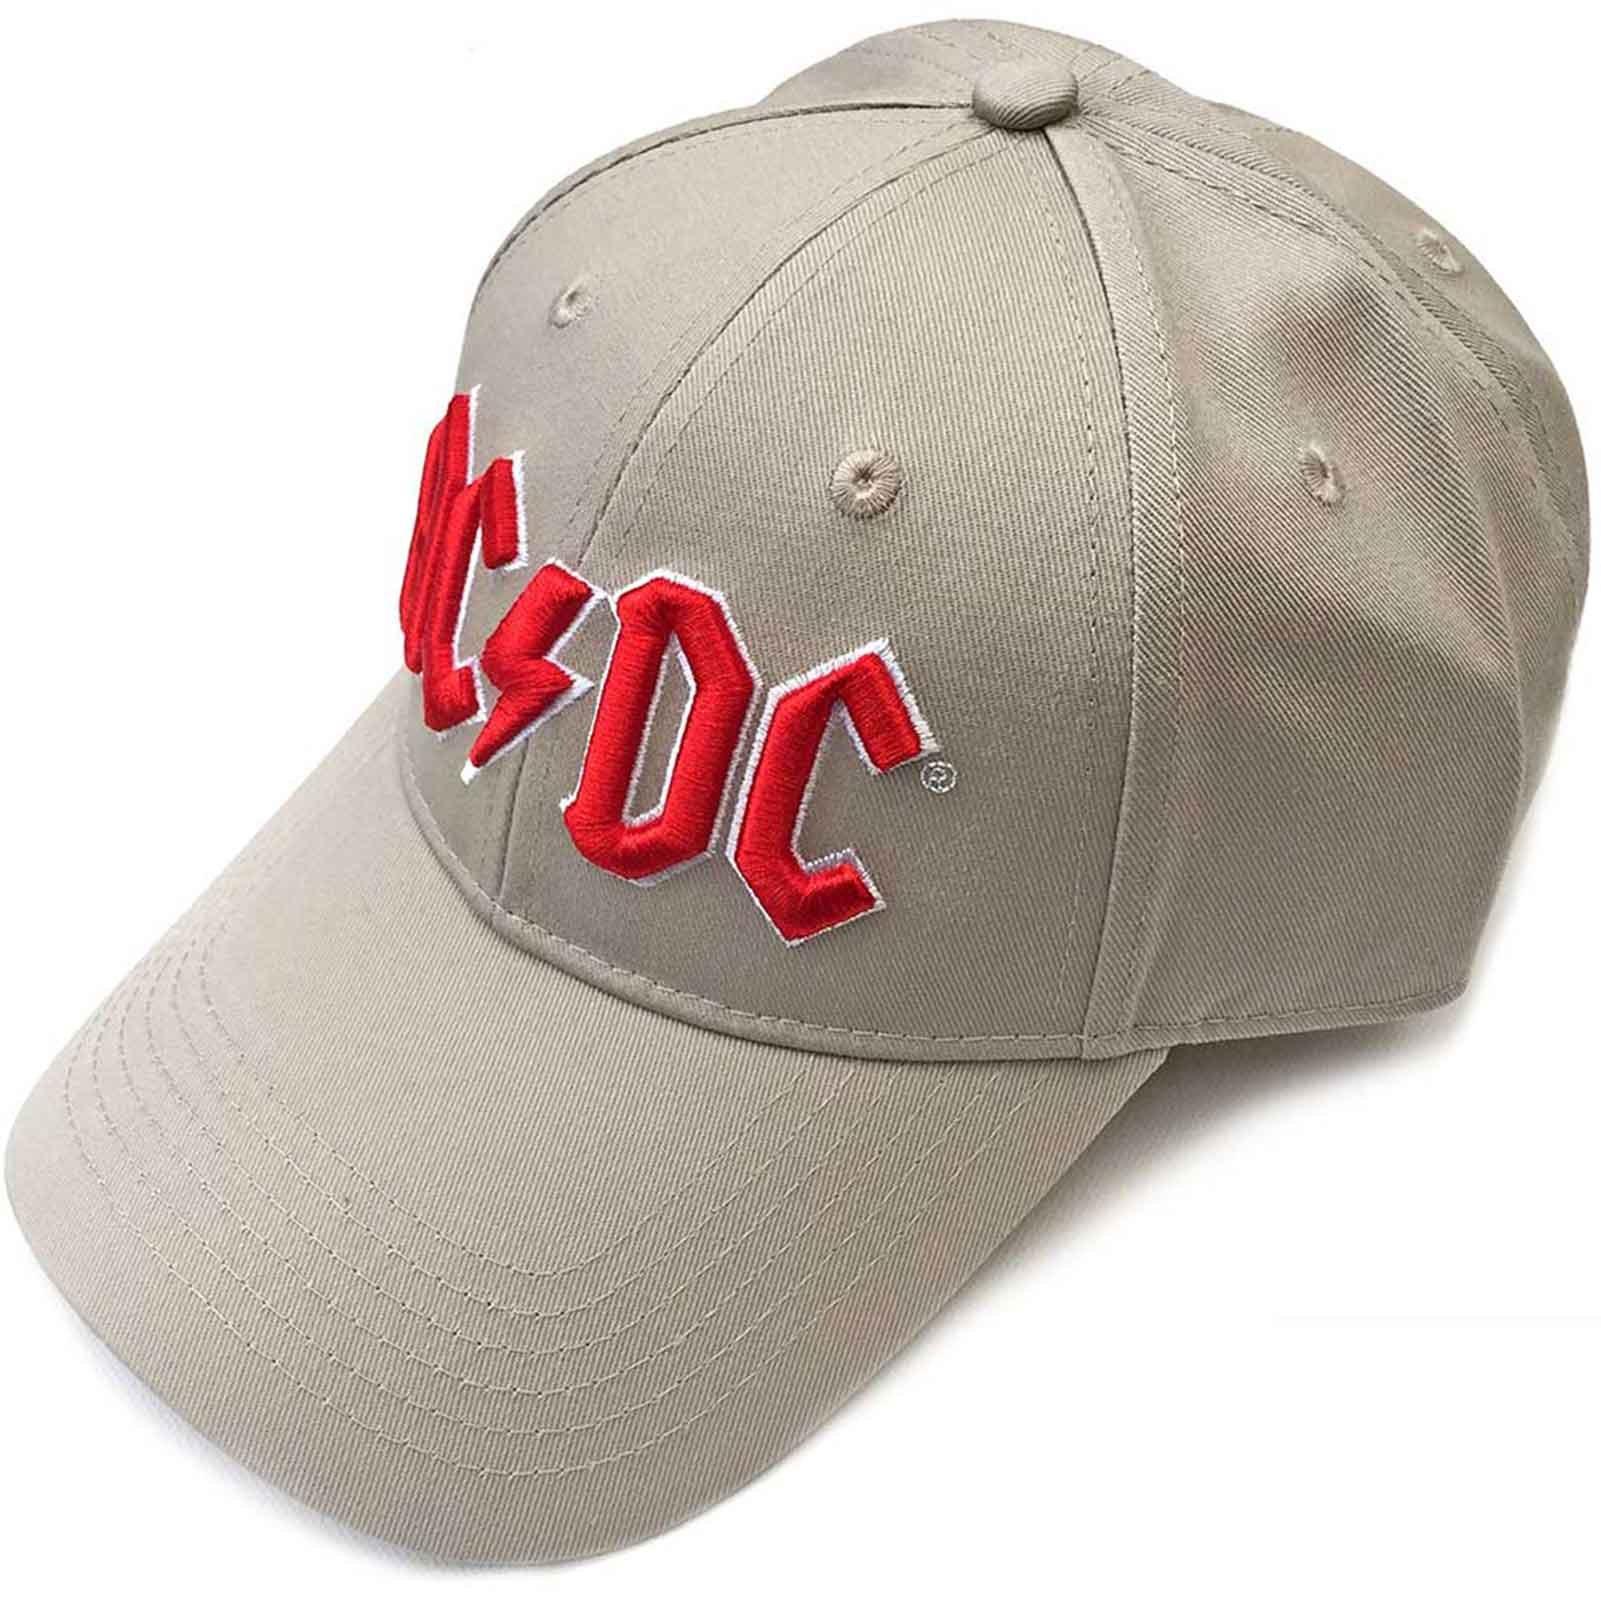 бейсболка zhejiang yining шерстяная серая Бейсбольная кепка с логотипом на ремешке на спине напряжения Band AC/DC, коричневый